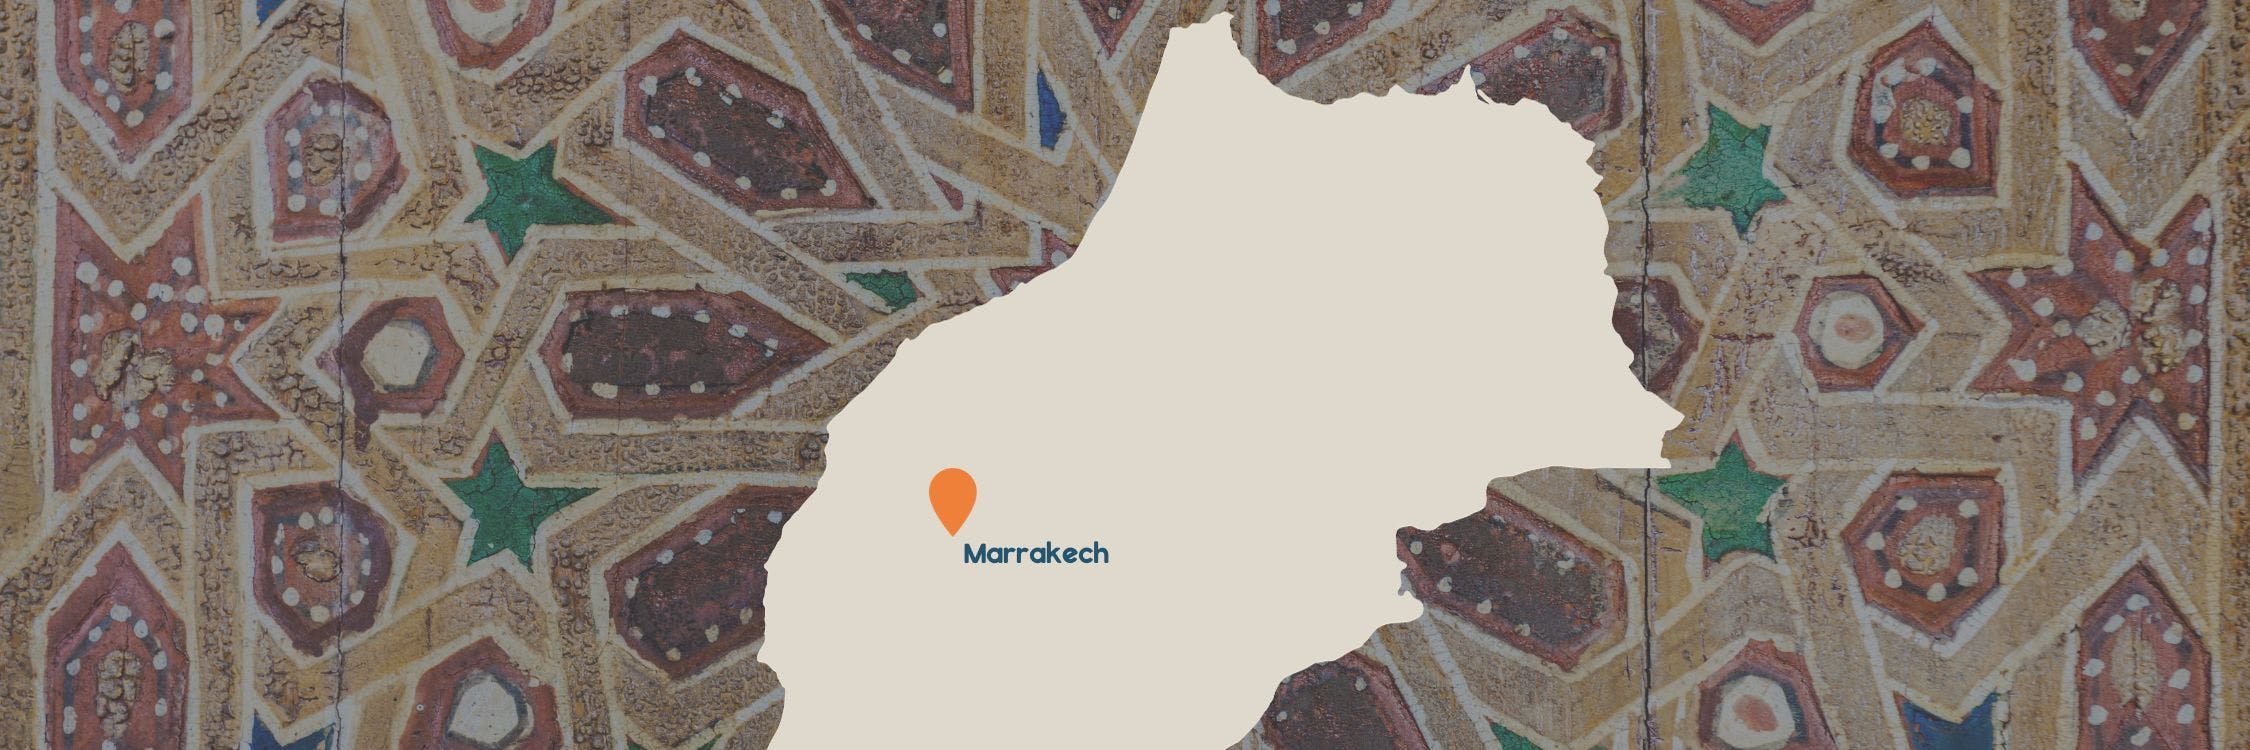 kaartje marokko met marrakech